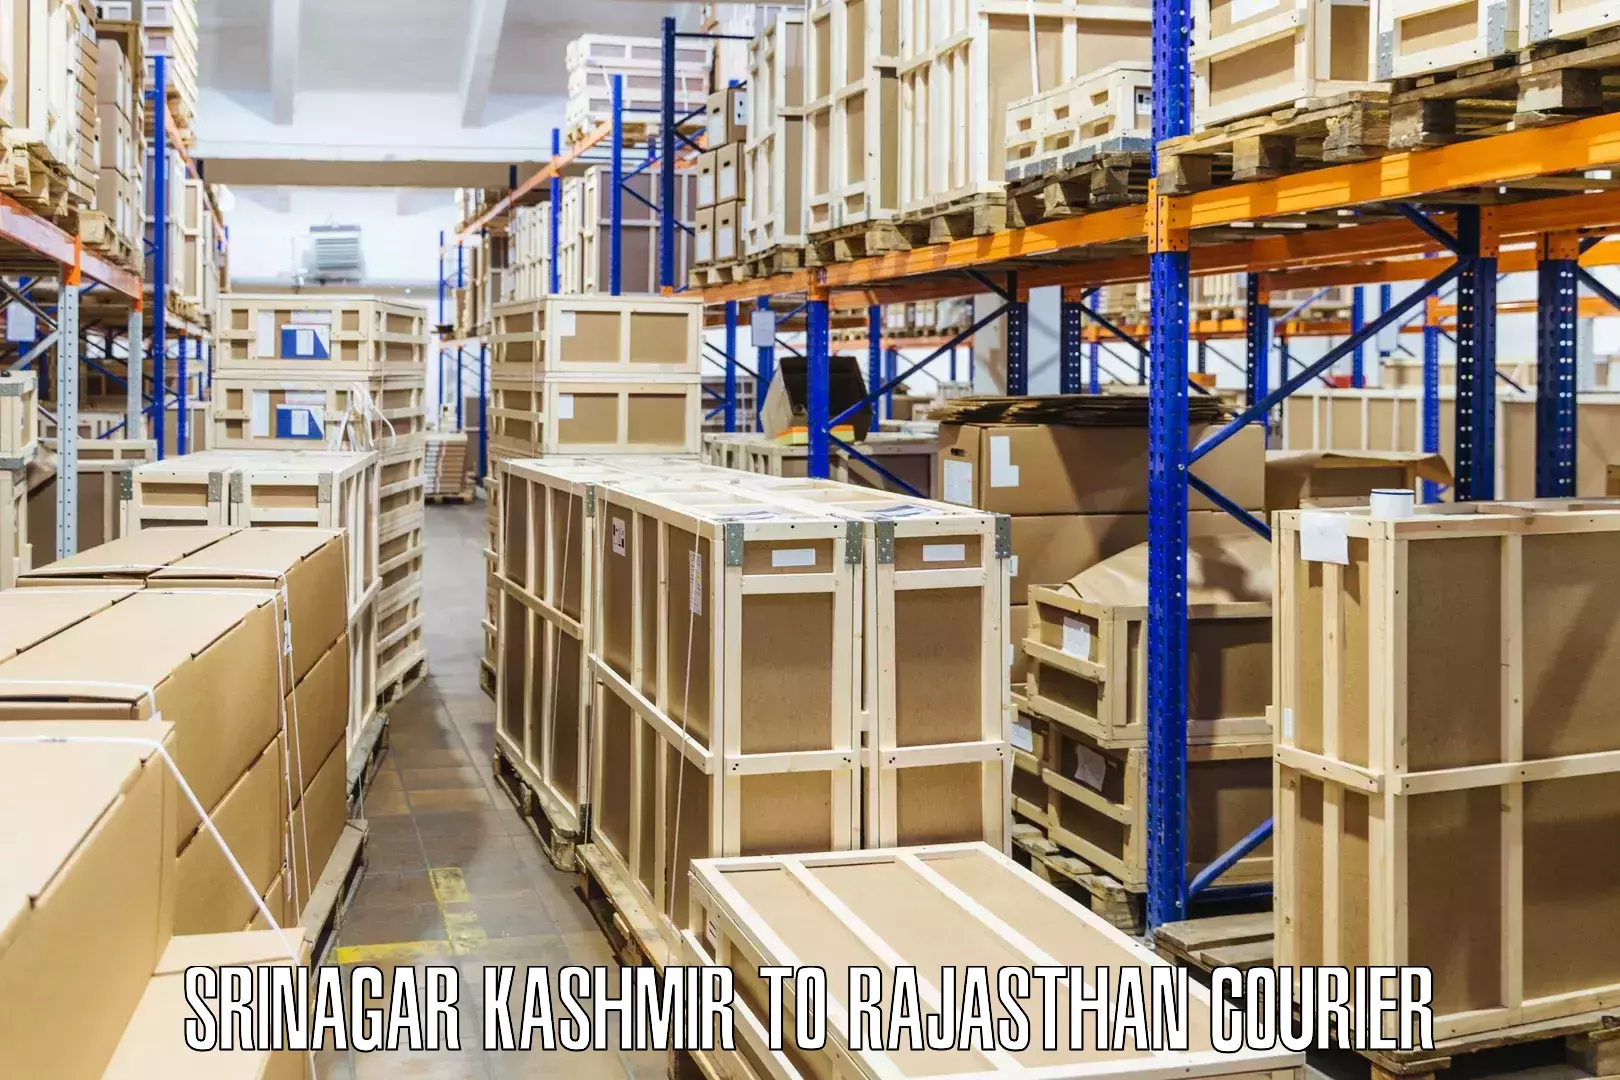 24/7 courier service Srinagar Kashmir to Sagwara